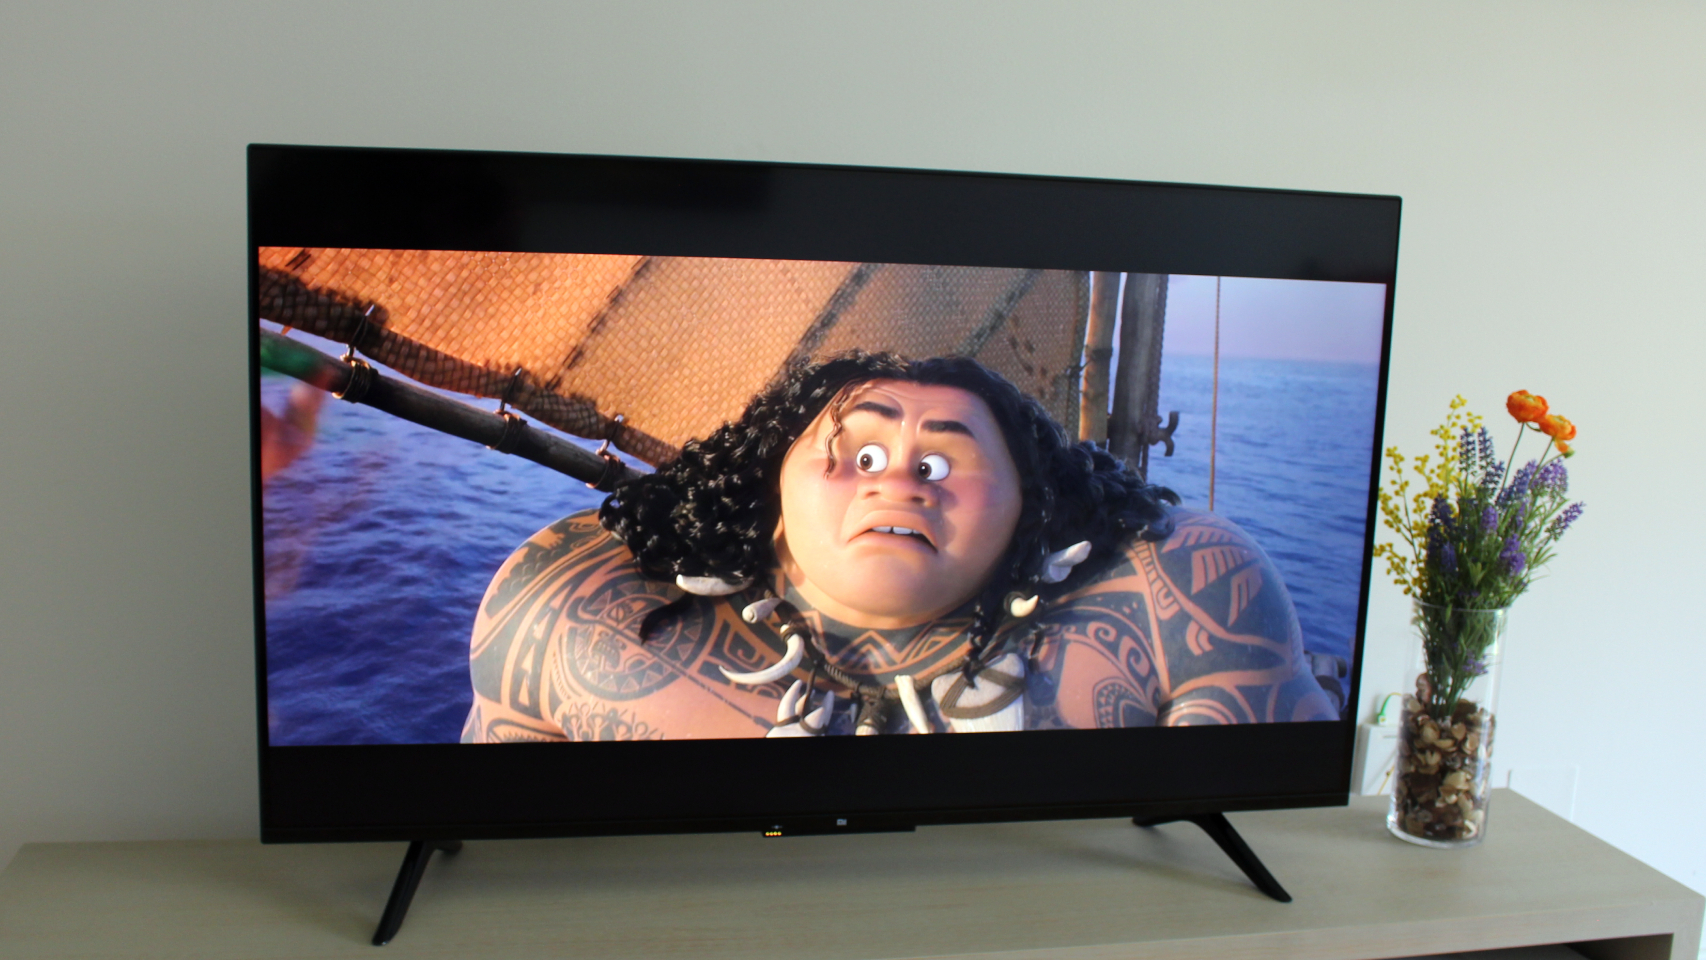 Análisis: Probamos la tele de Xiaomi Mi TV P1 de 55 pulgadas